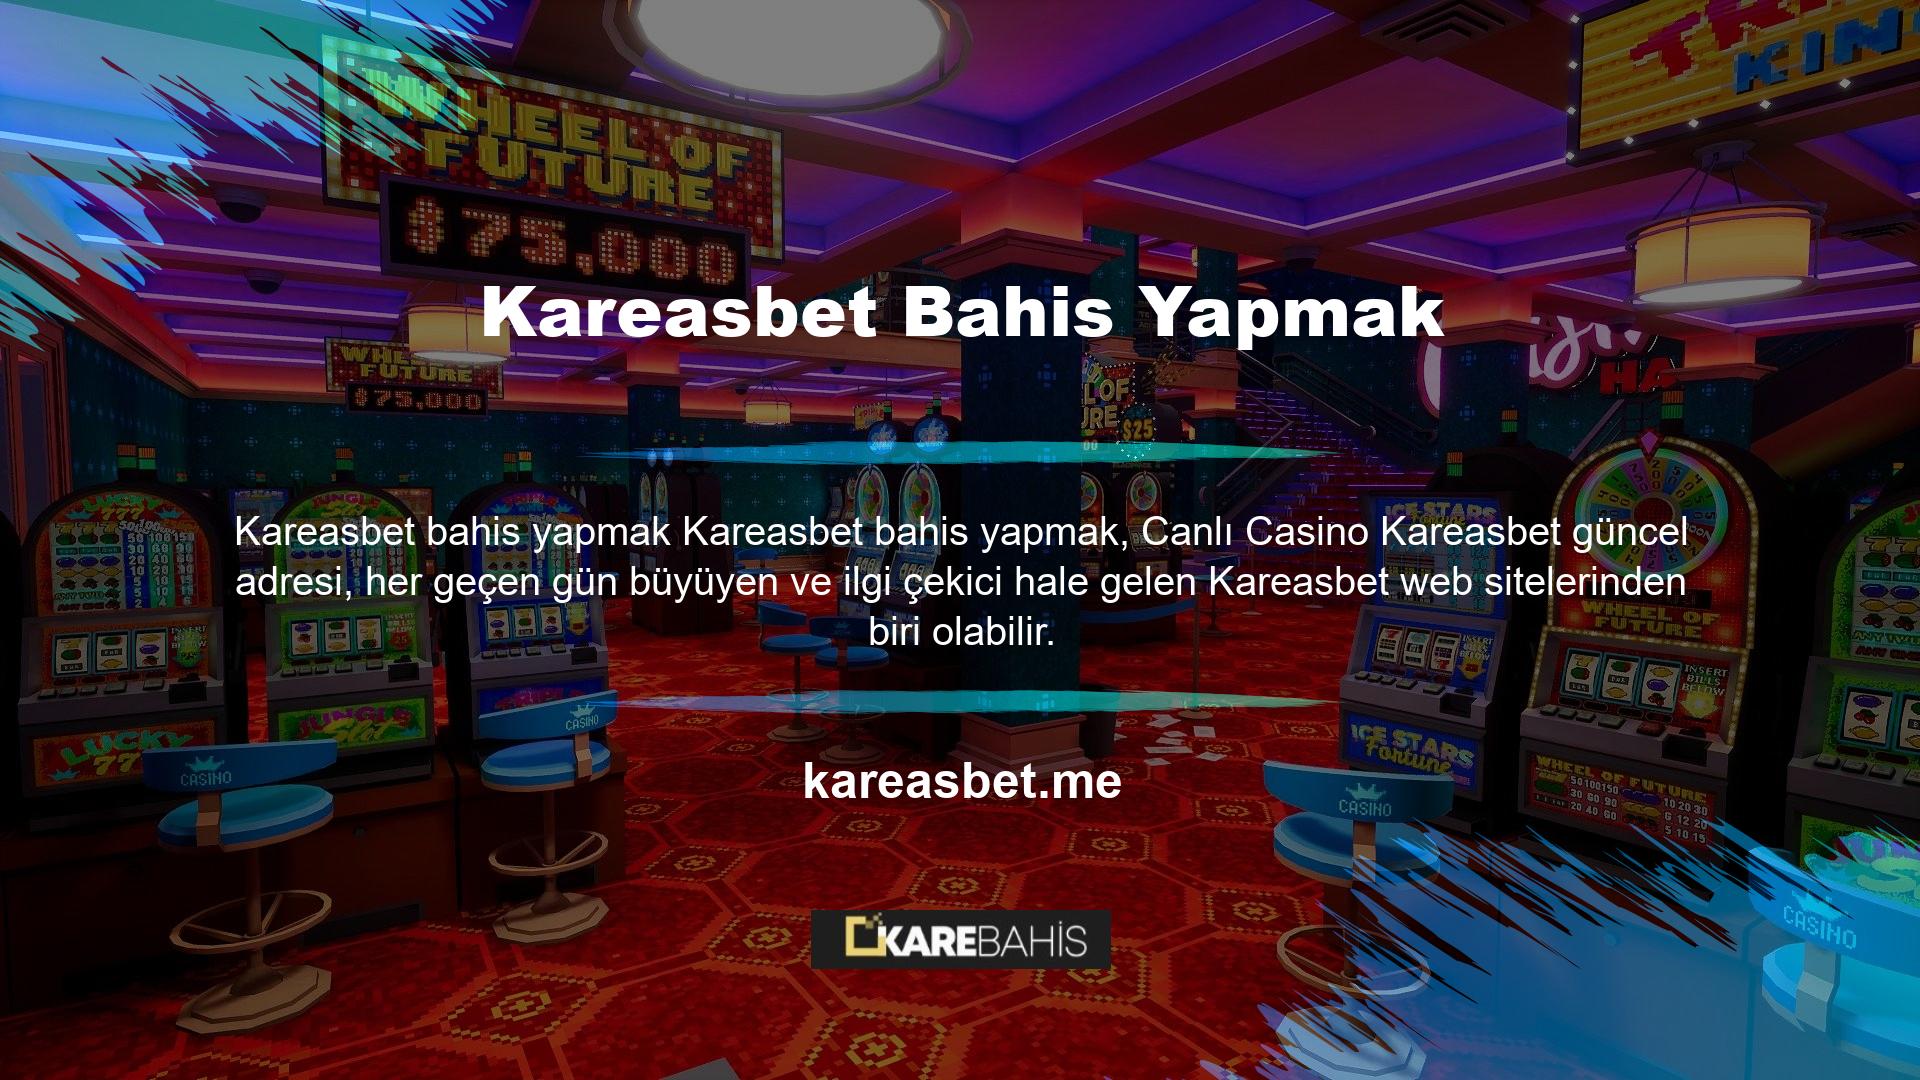 Kareasbet diğer bahis bölümleri gibi, canlı casino bölümünün de belirli site kalite standartlarını karşılaması gerekmez